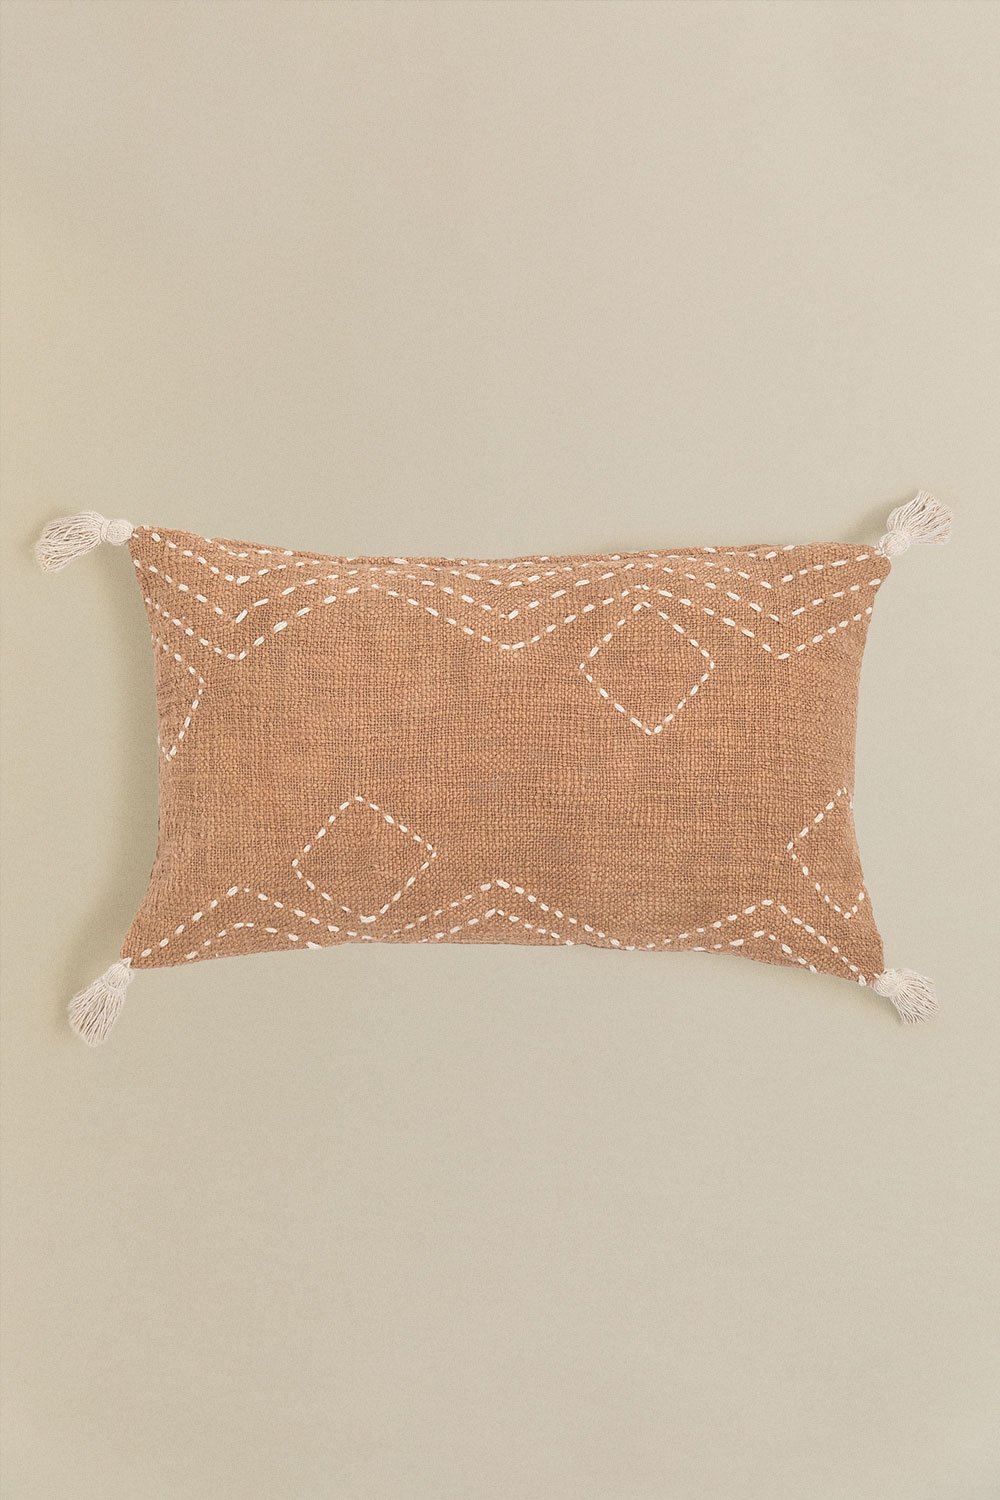 Prostokątna poduszka z bawełny (30x50 cm) Biara, obrazek w galerii 1